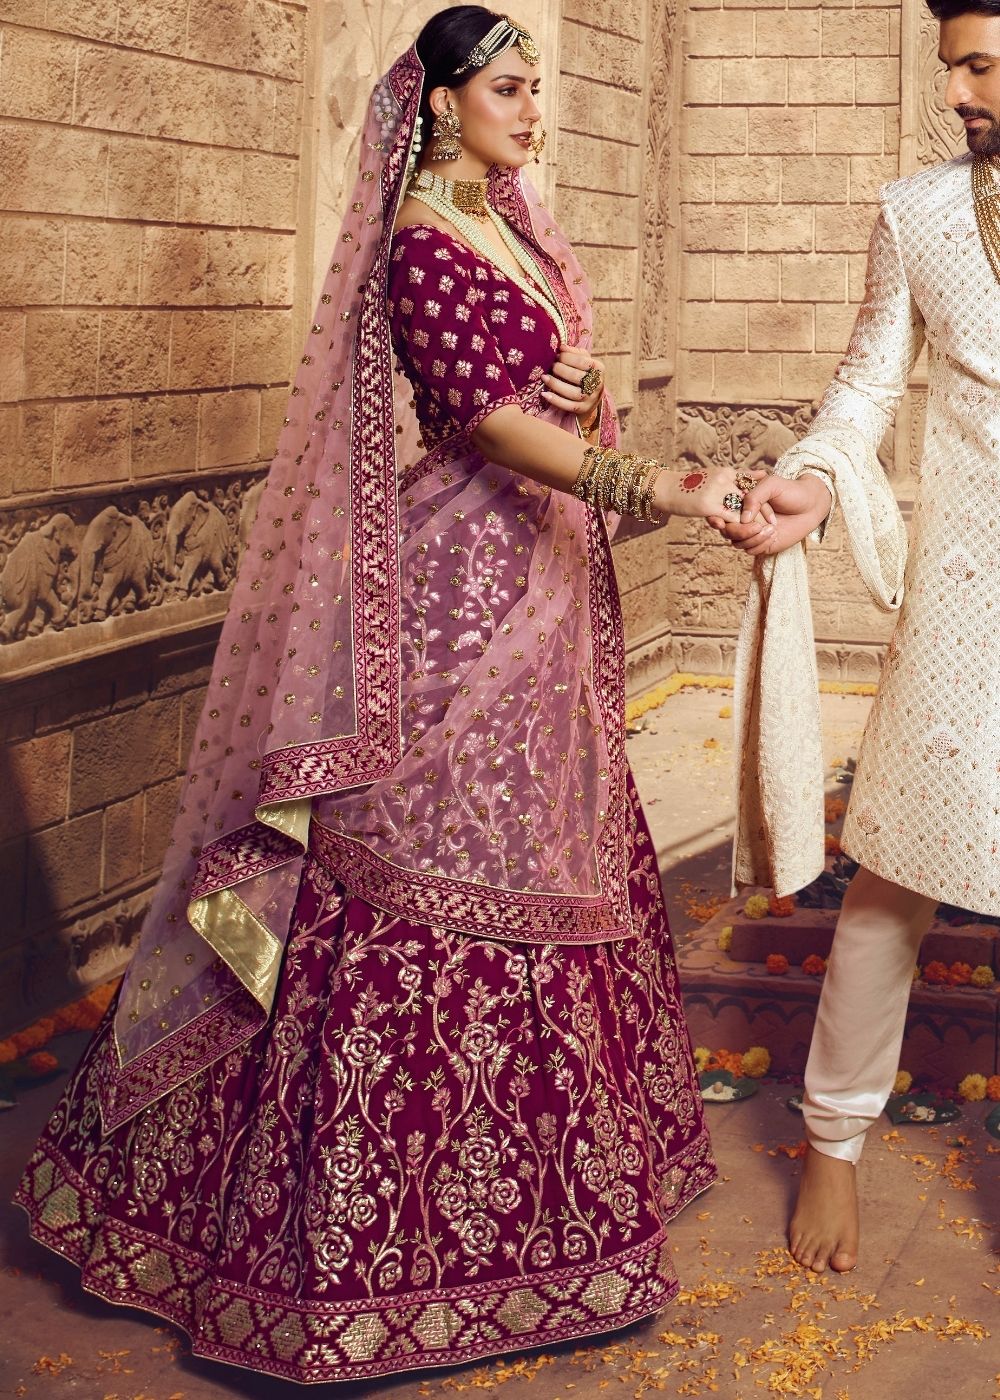 33+ Unique Outfit Combinations for Brides & Grooms! | WeddingBazaar